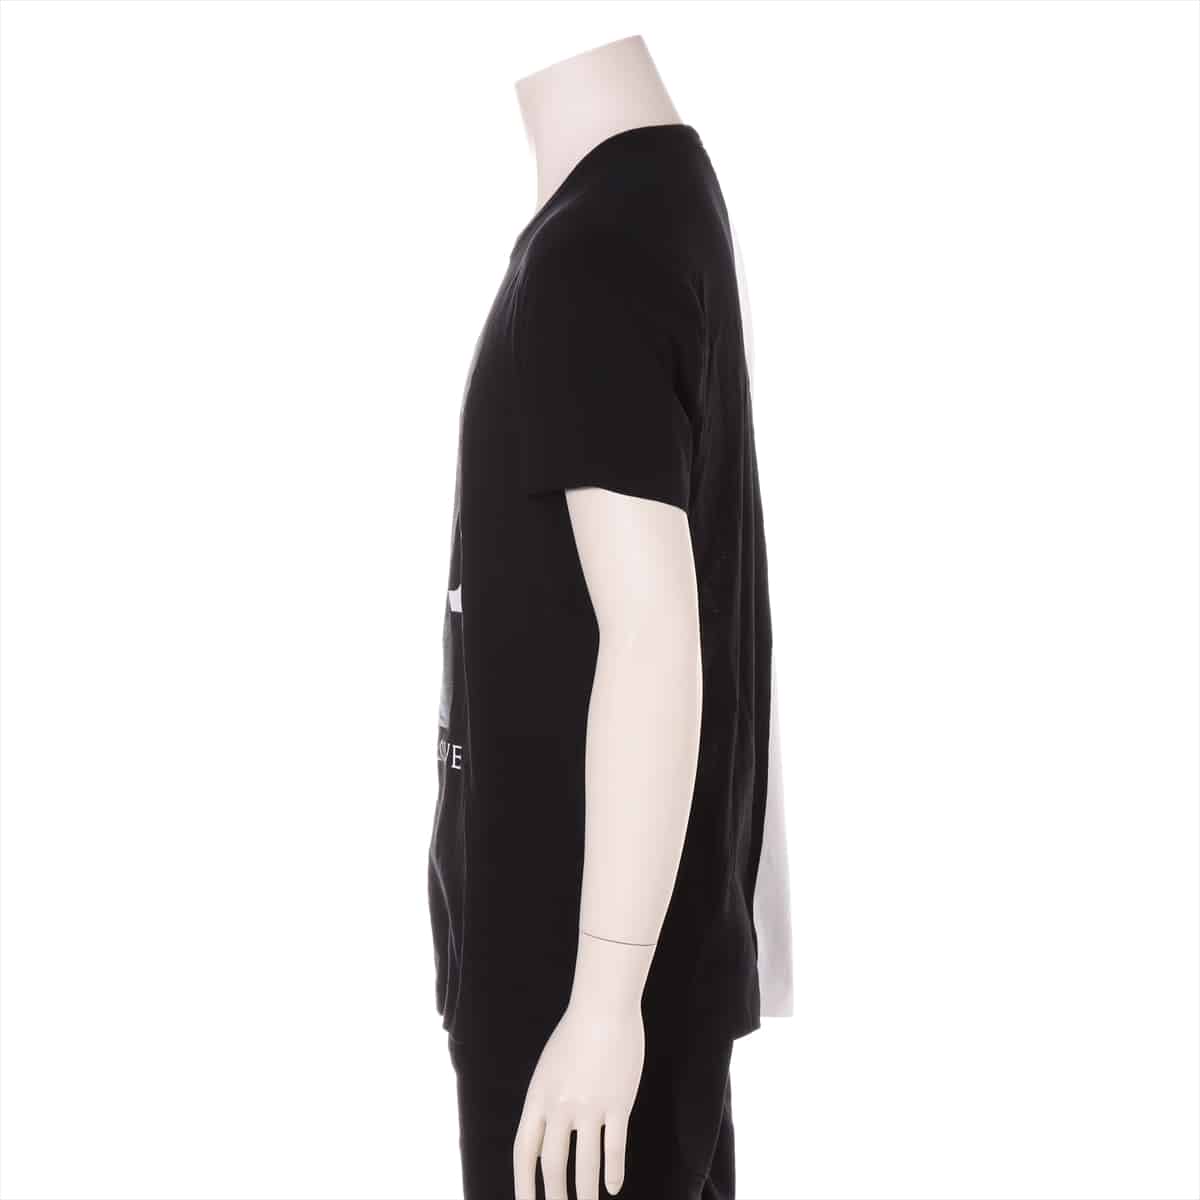 ルイヴィトン RM182 コットン Tシャツ XS メンズ ブラック×ホワイト